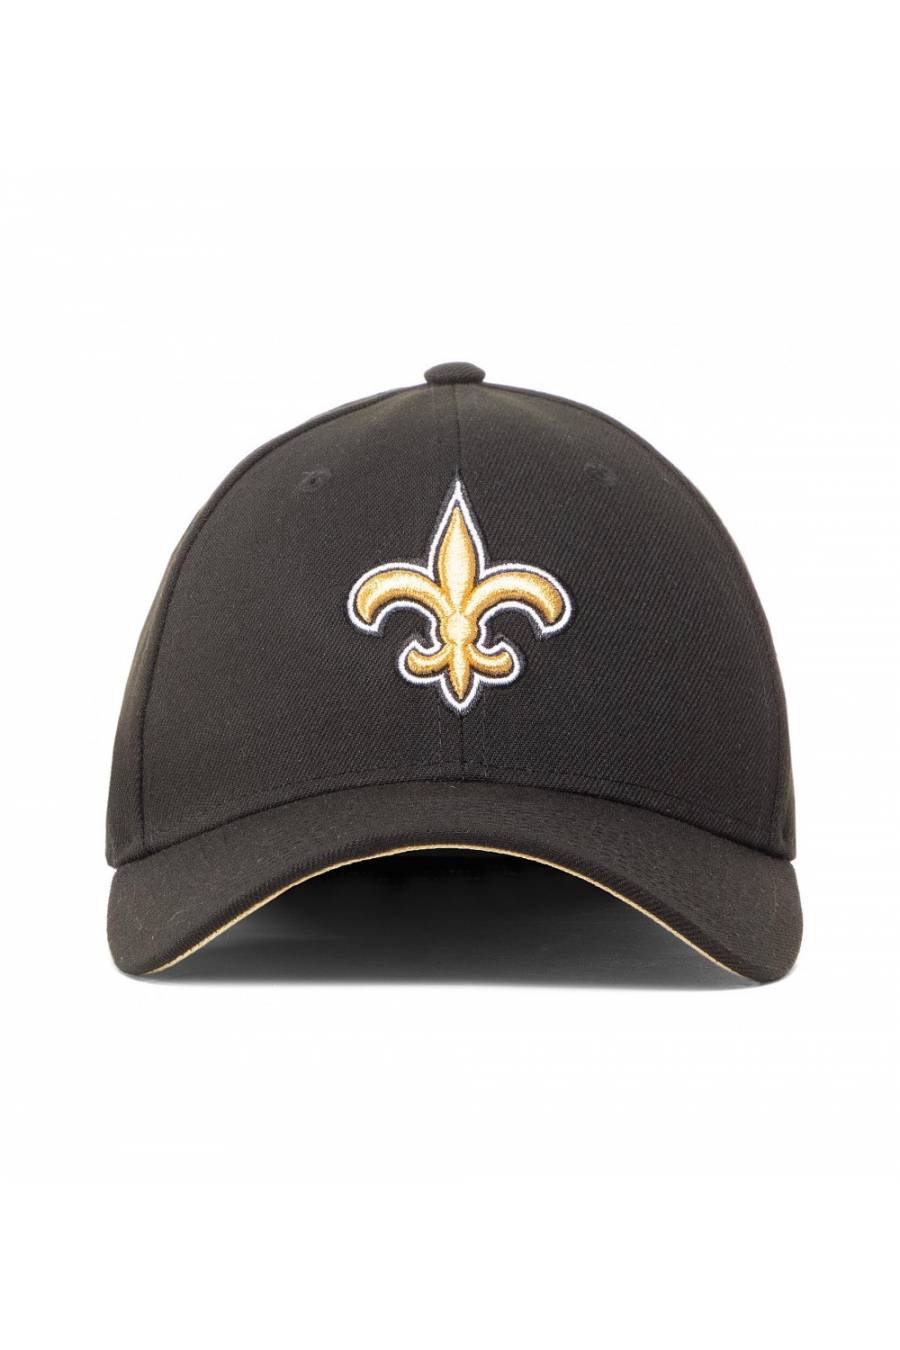 Gorra New Era New Orleans Saints 10517876